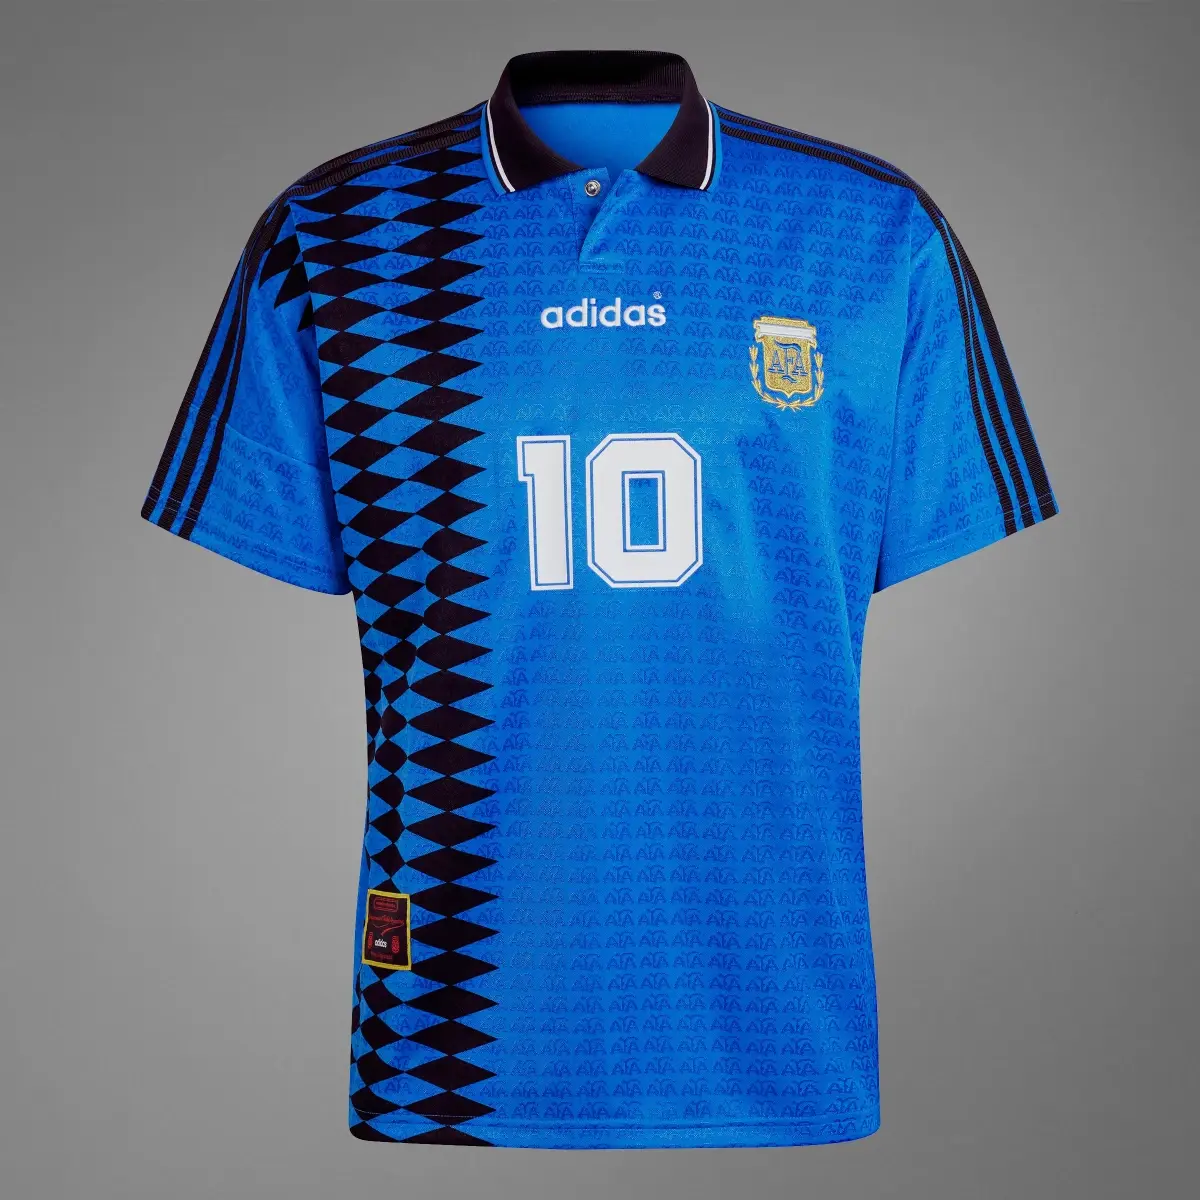 Adidas Camisola Alternativa 1994 da Argentina. 3